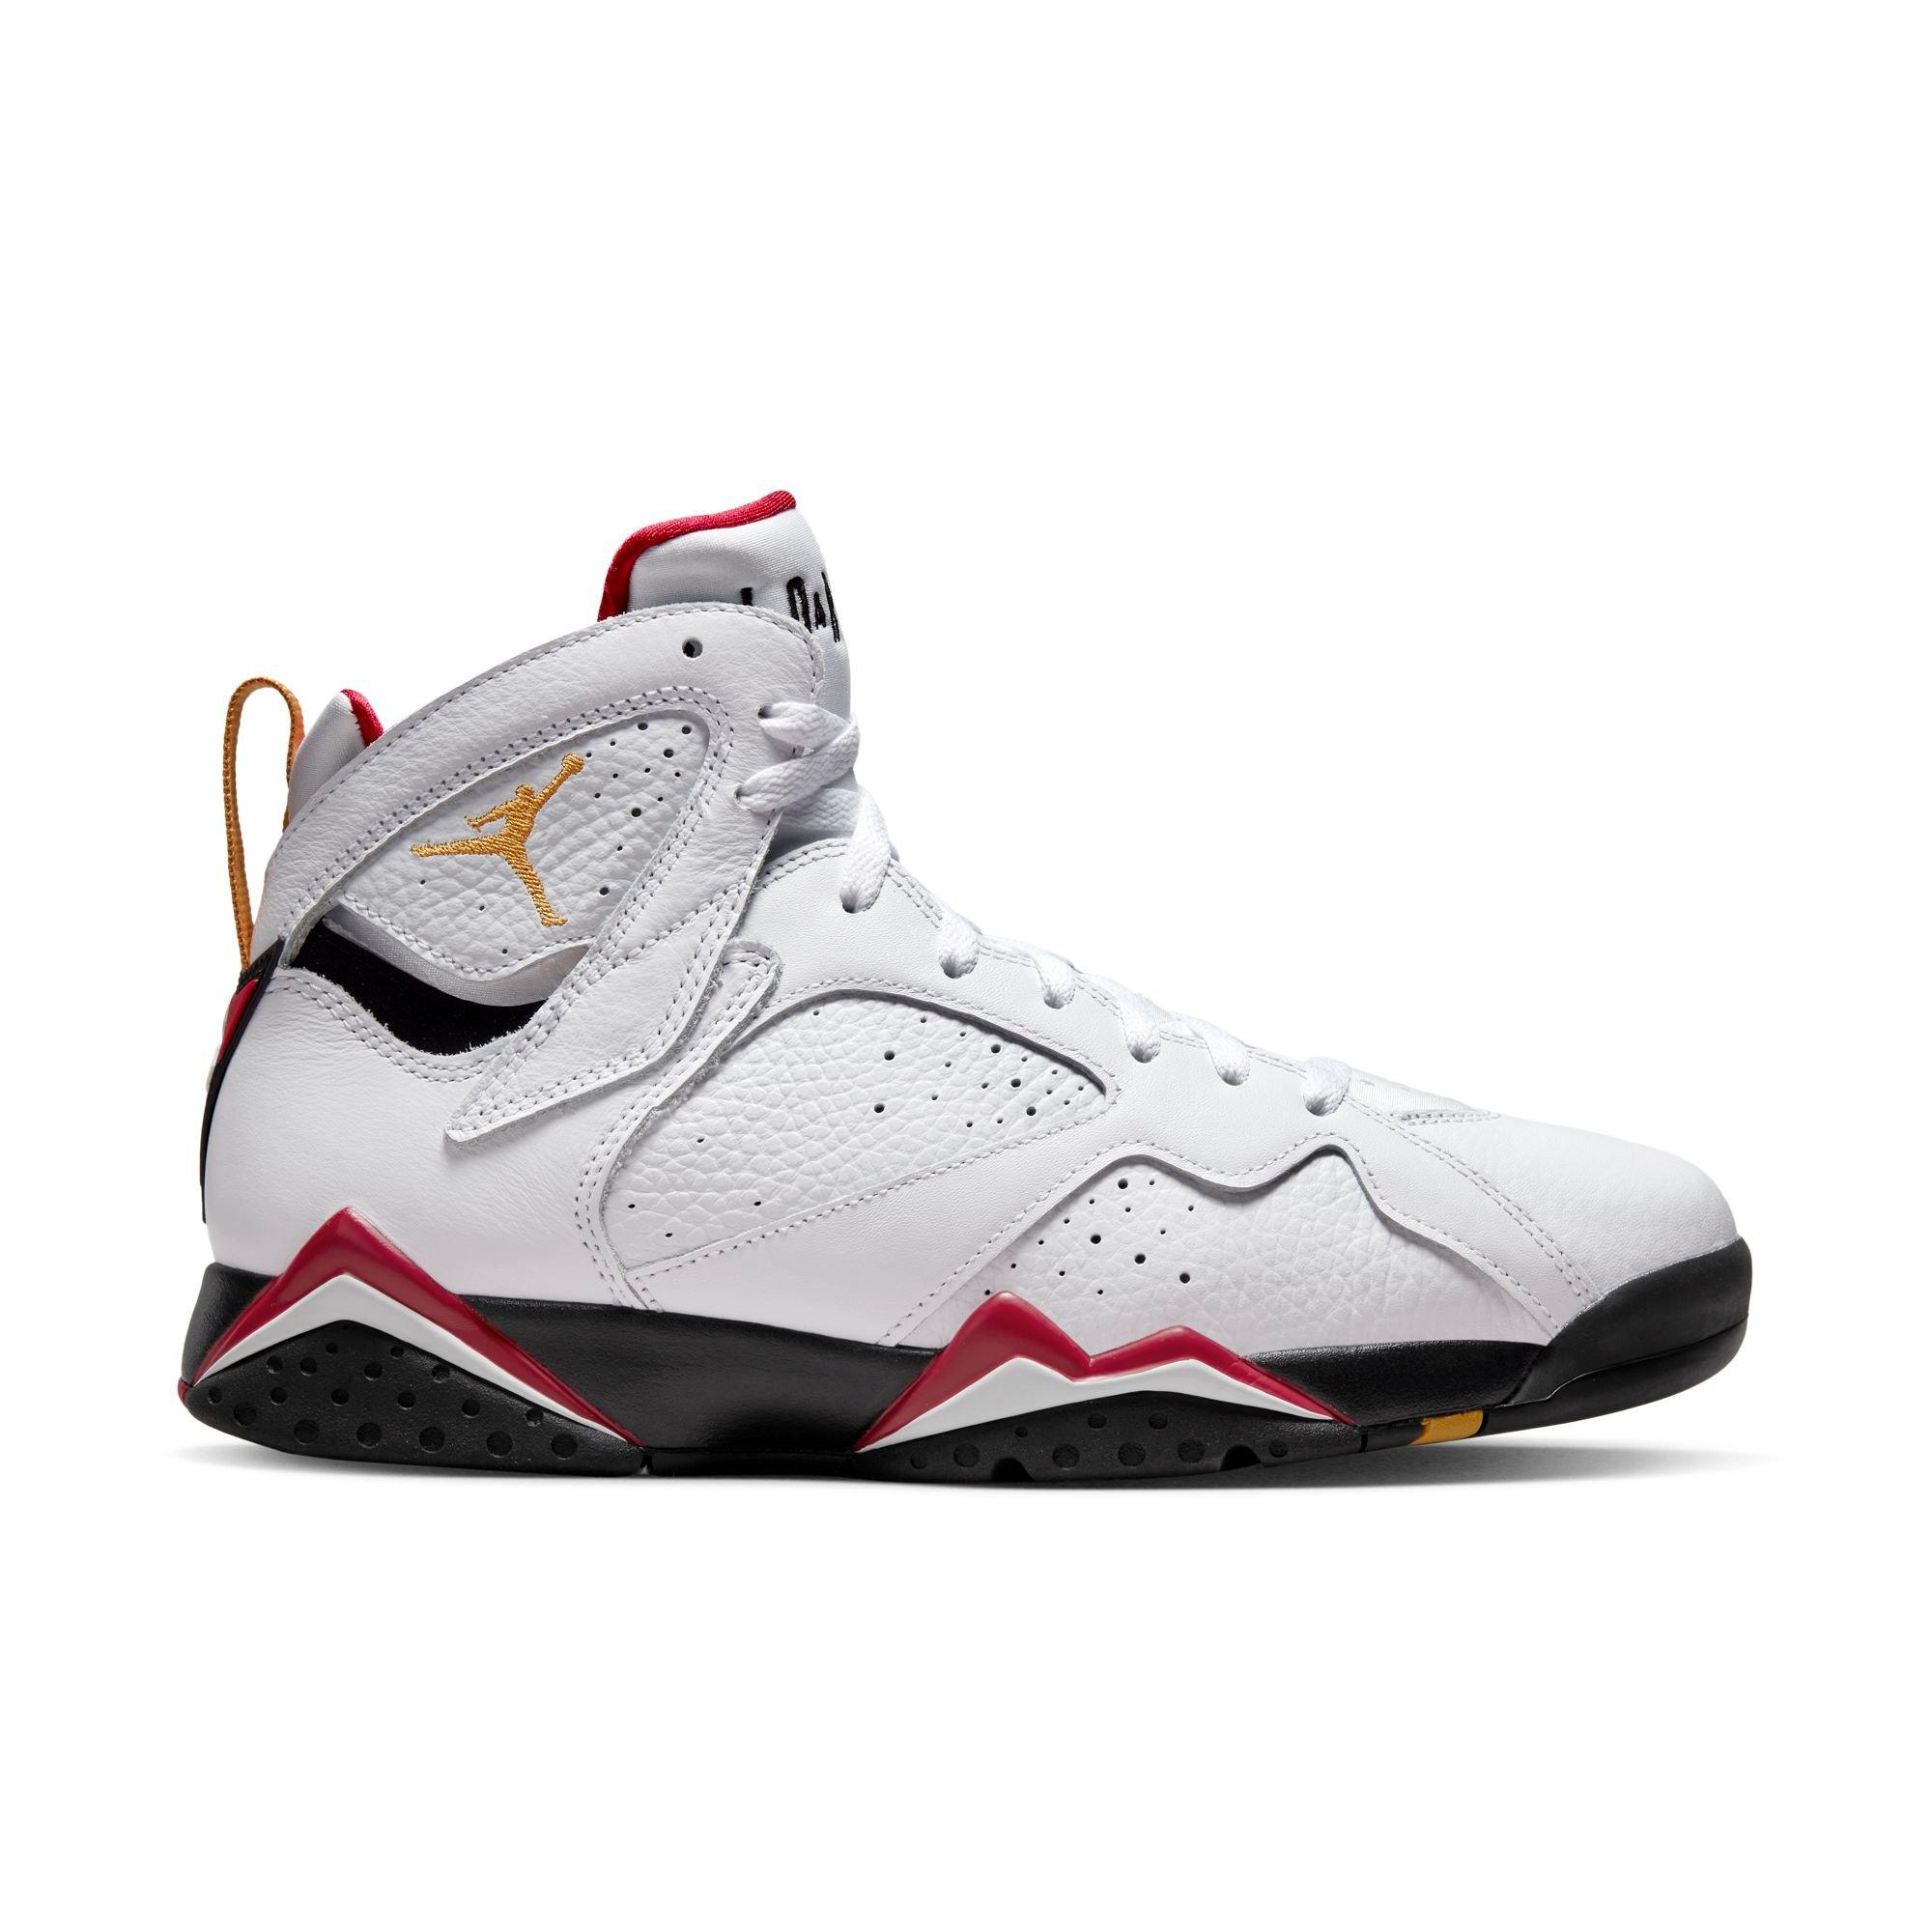 Jordan 7 Red"​ Shoe